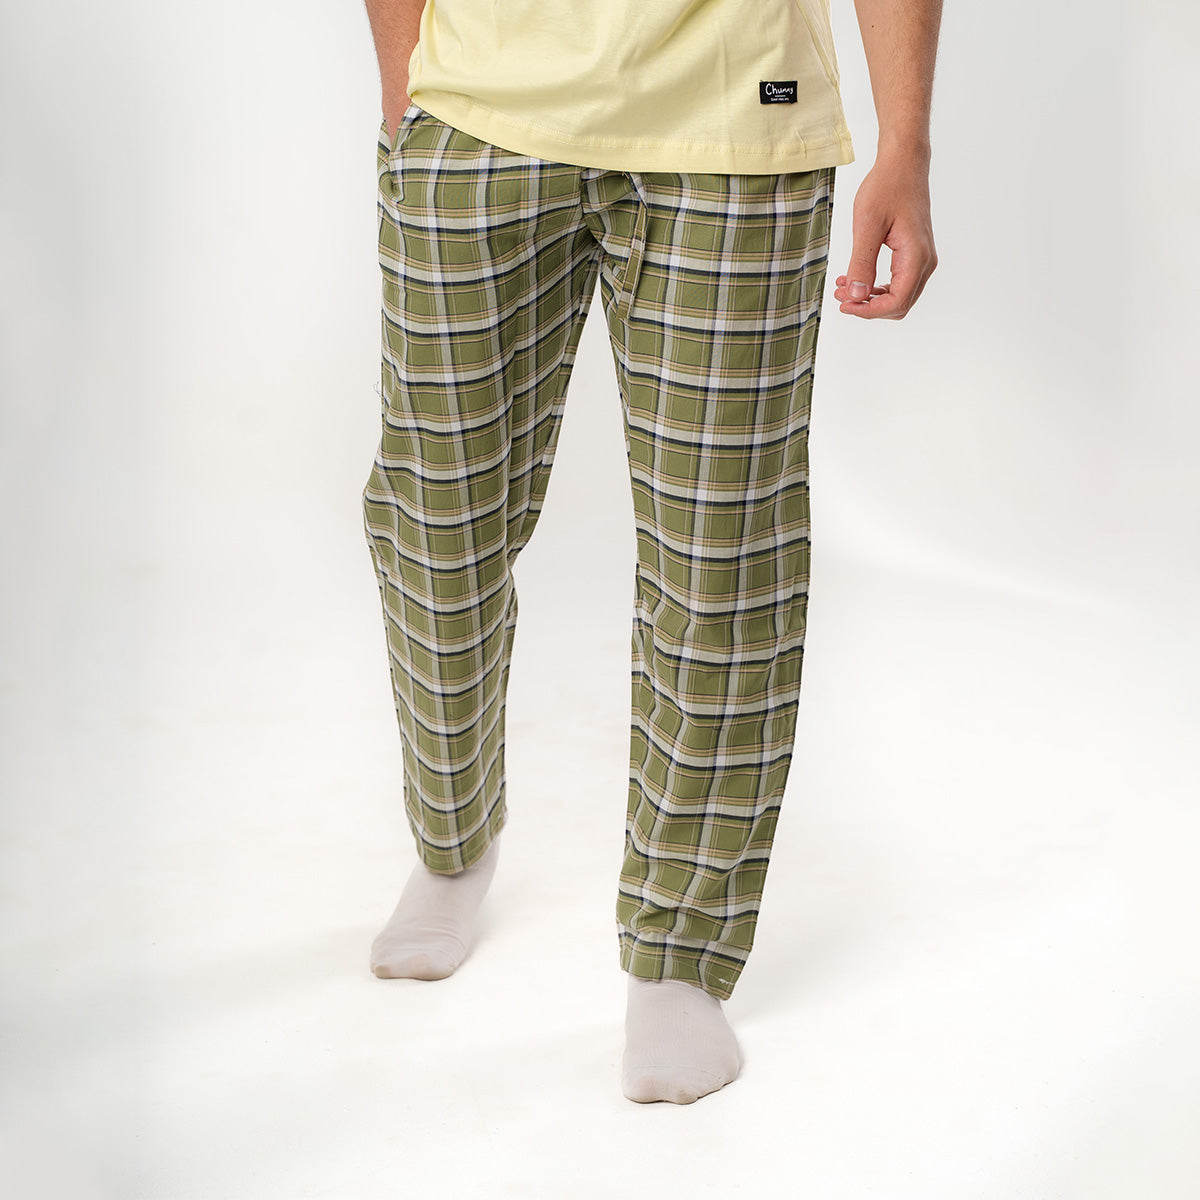 Olive Plaid Pyjama Pants set